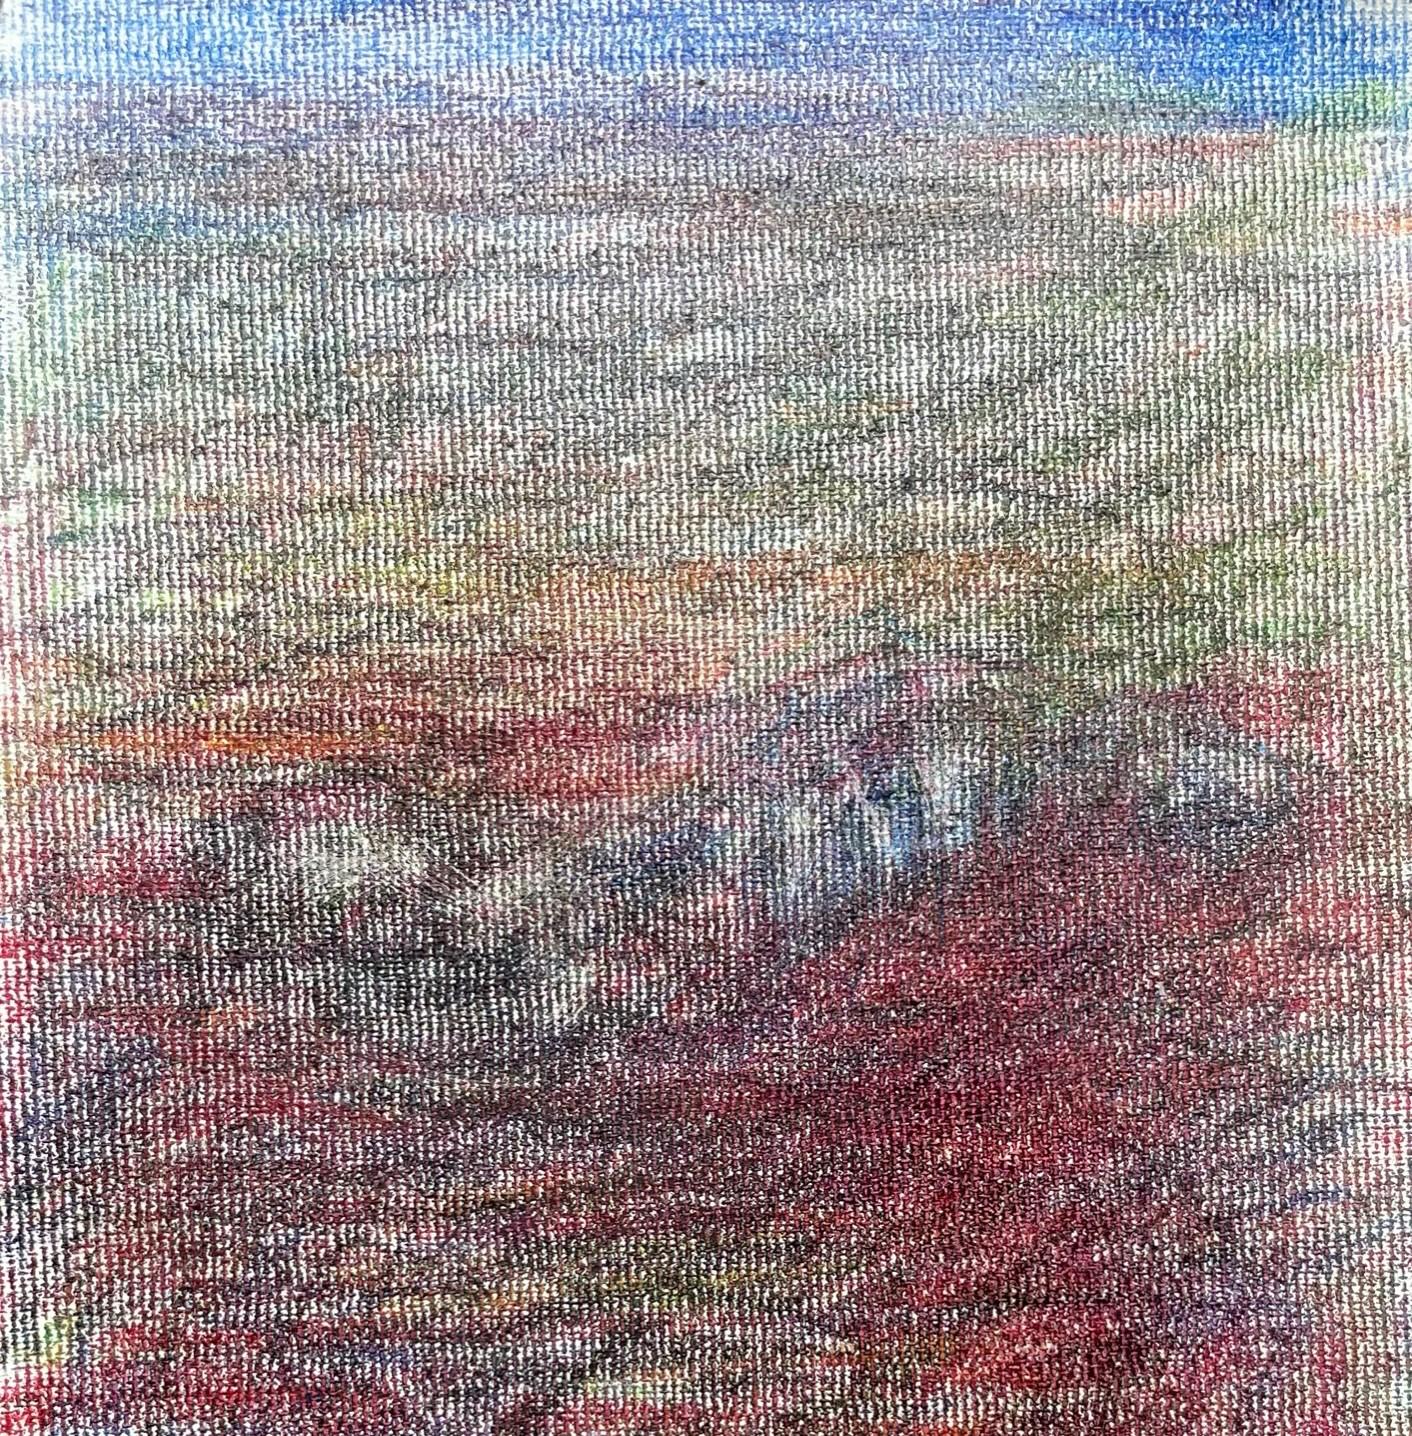 Body in the Field #2 - Rot, Blau, Zeichnung, Buntstifte, Landschaft – Art von Zsolt Berszán